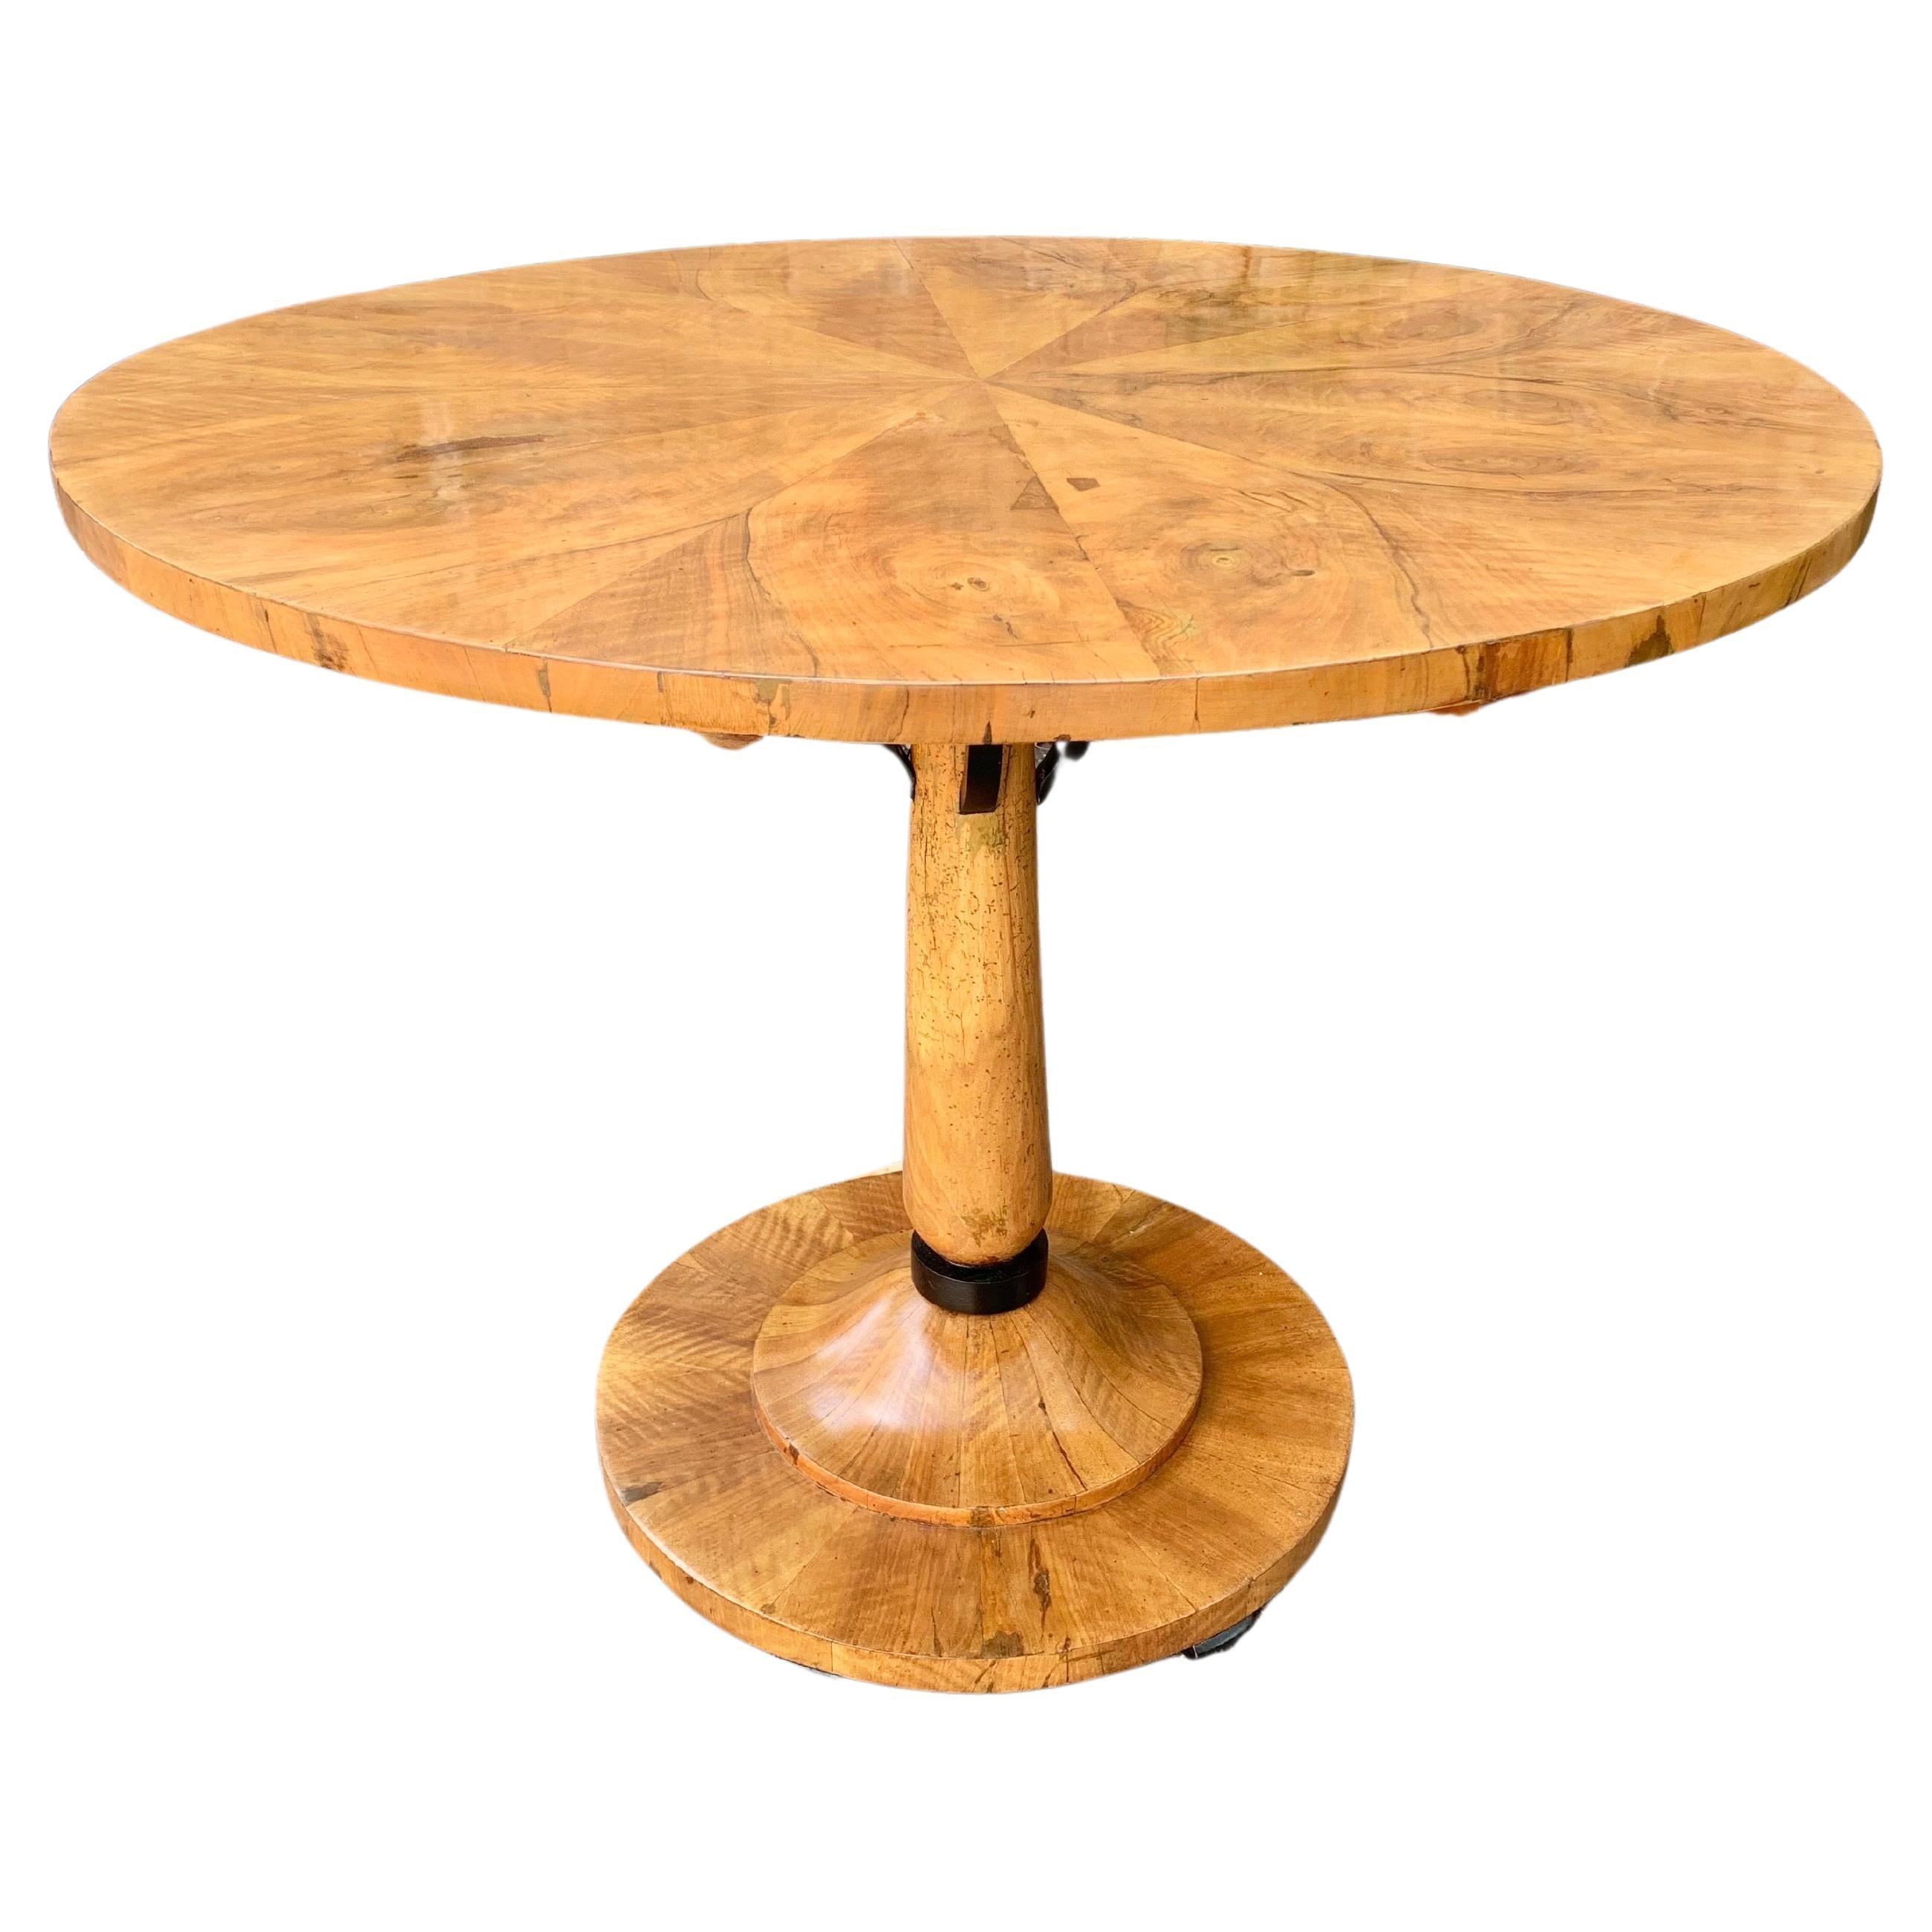 Dieser atemberaubende Biedermeir-Sockeltisch wurde im 19. Jahrhundert von Möbelhandwerkern hergestellt. Der Tisch hat eine schöne, mit Buchholz furnierte Platte, einen Sockel und einen abgerundeten Boden, der auf sechs ebonisierten Füßen ruht. Das